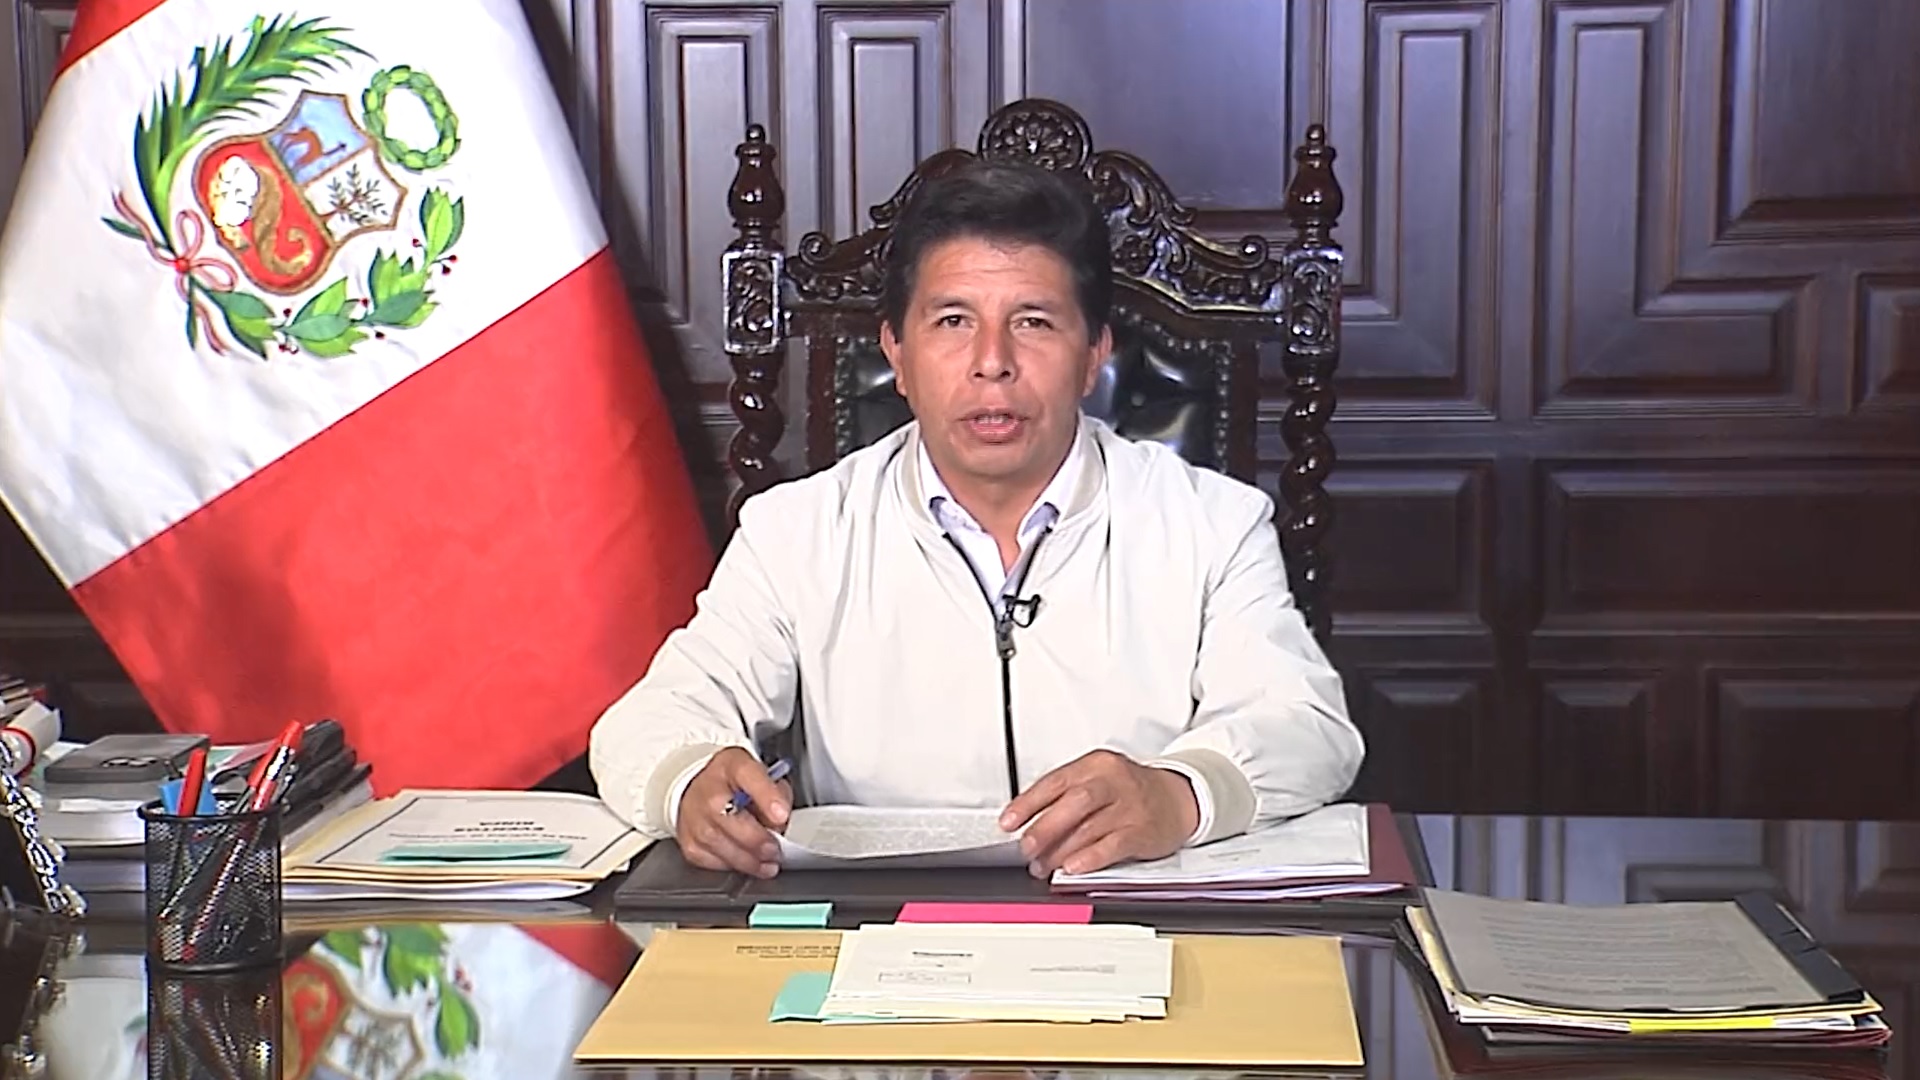 Presidente Peru em pronunciamento na televisão - Foto: Reprodução/Twitter @presidenciaperu